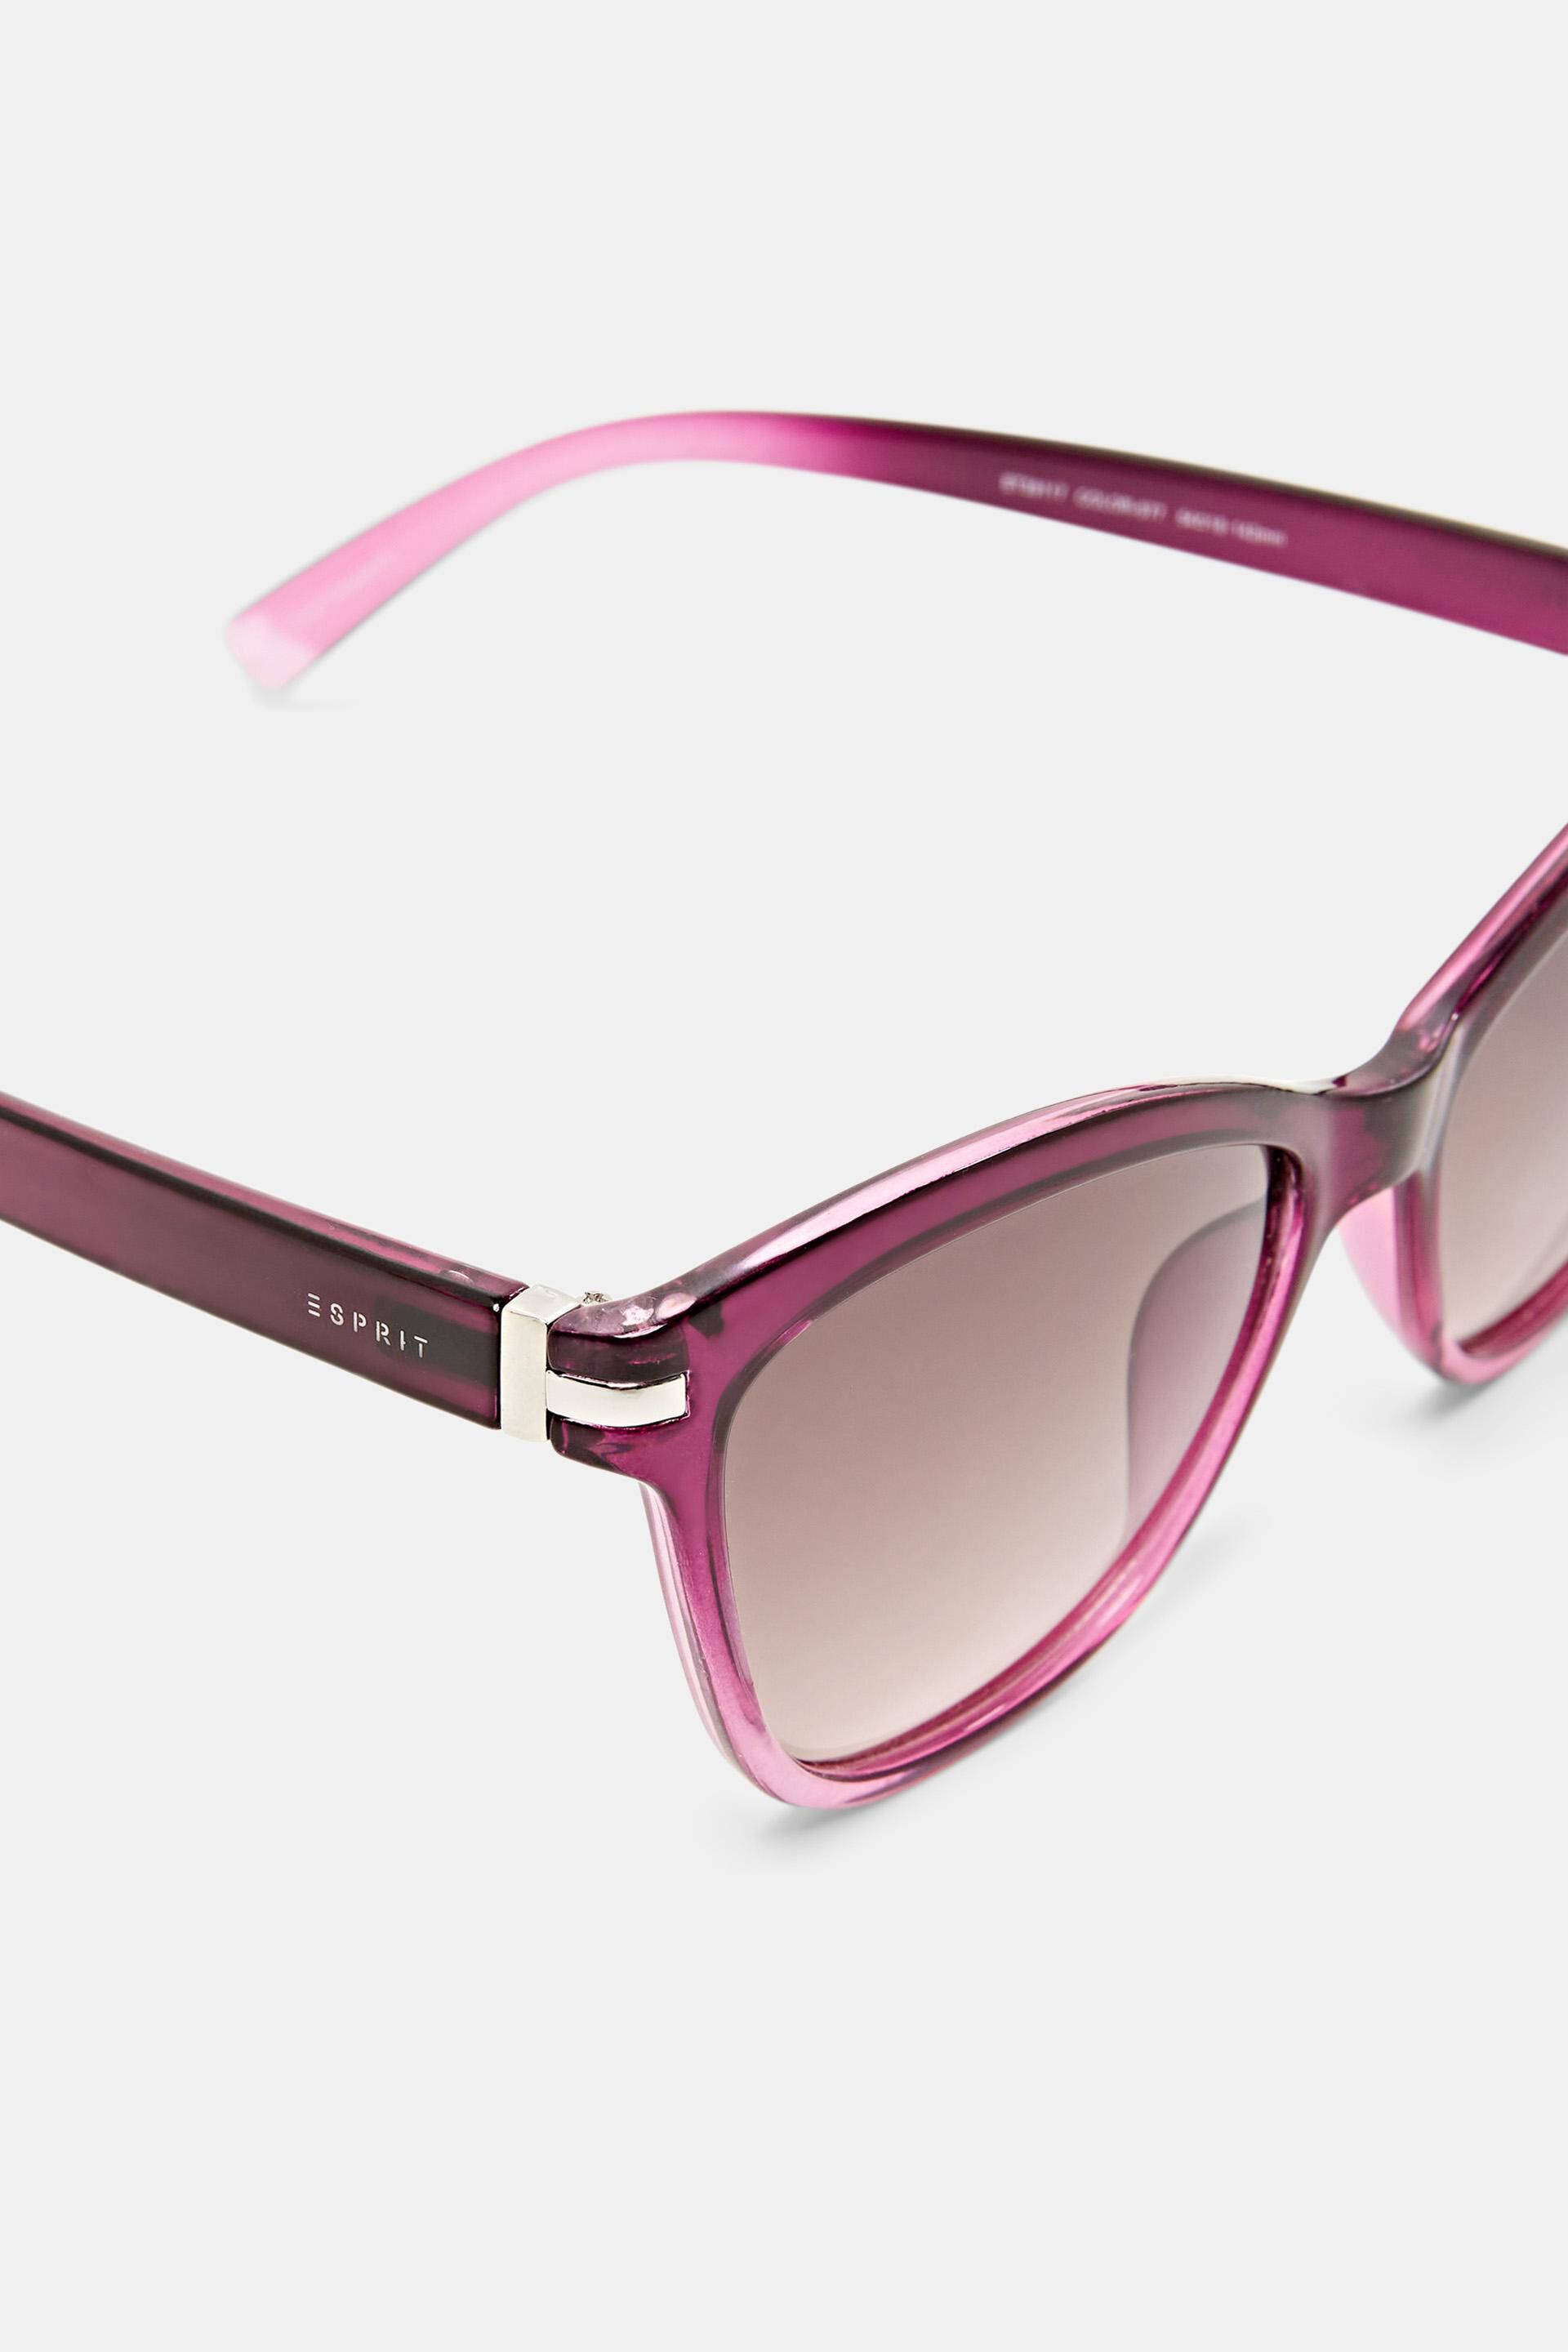 Esprit Online Store Sonnenbrille mit Metalldetails